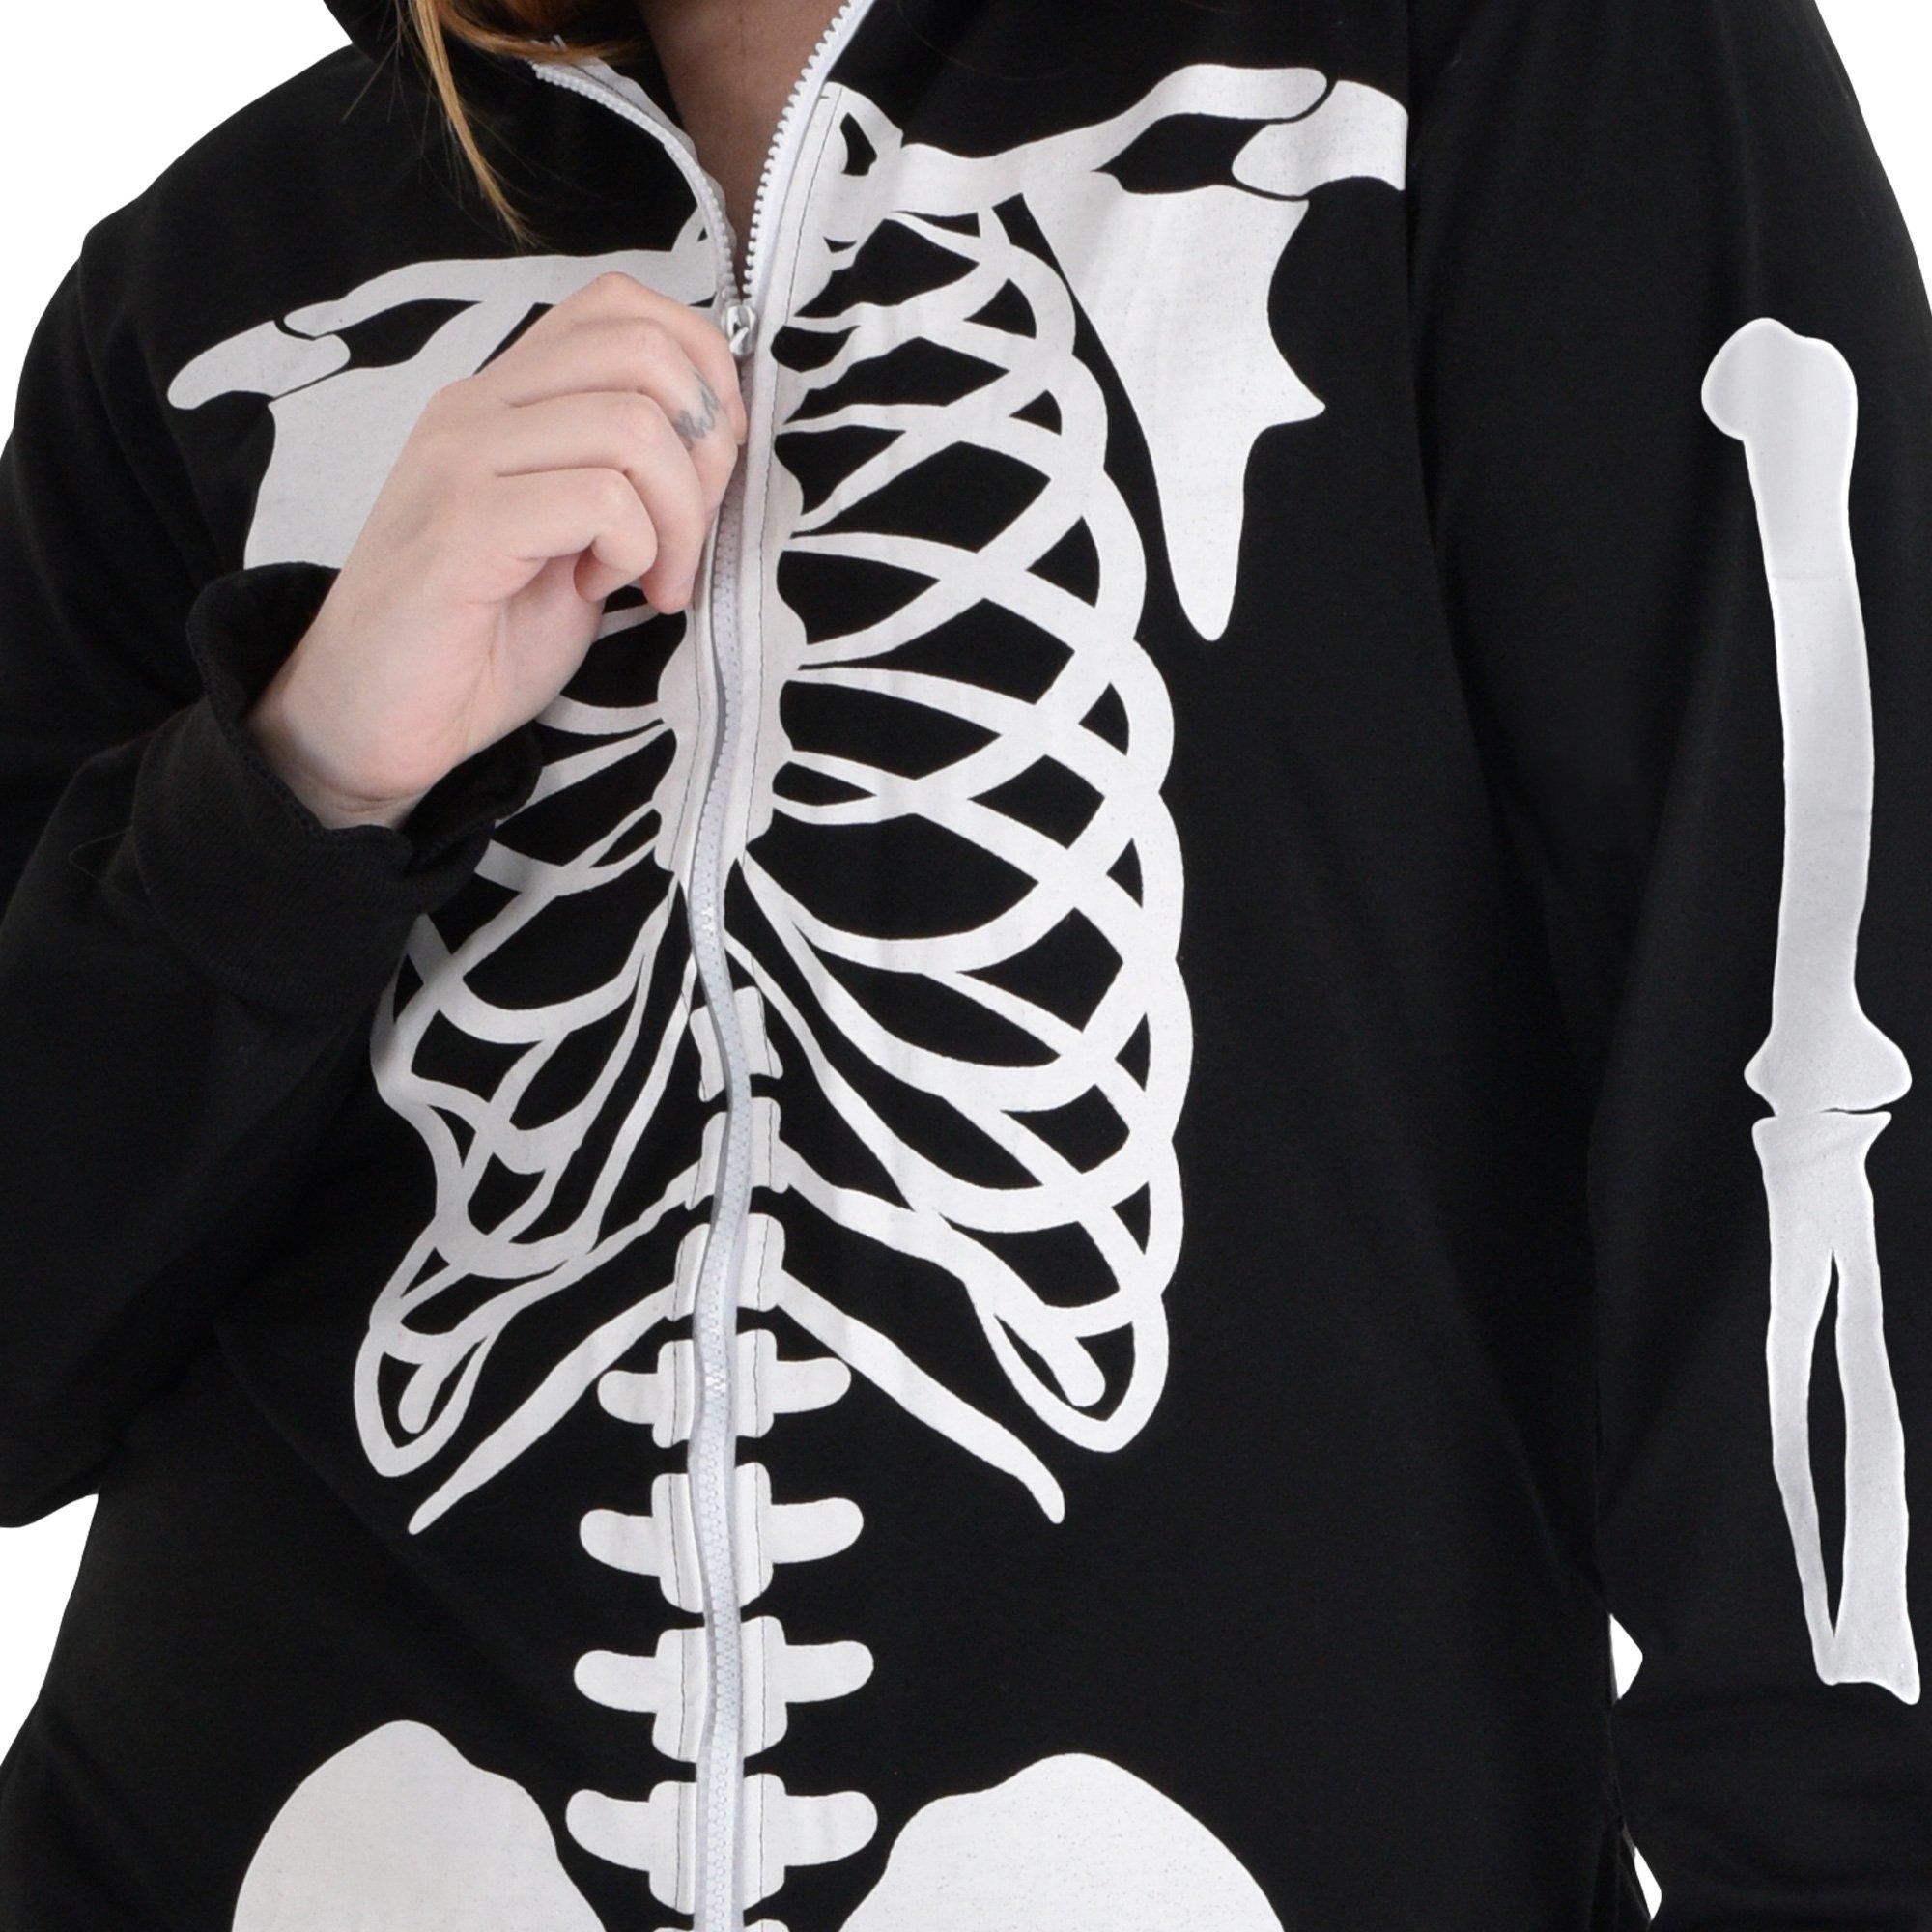 Adult Skeleton Onesie